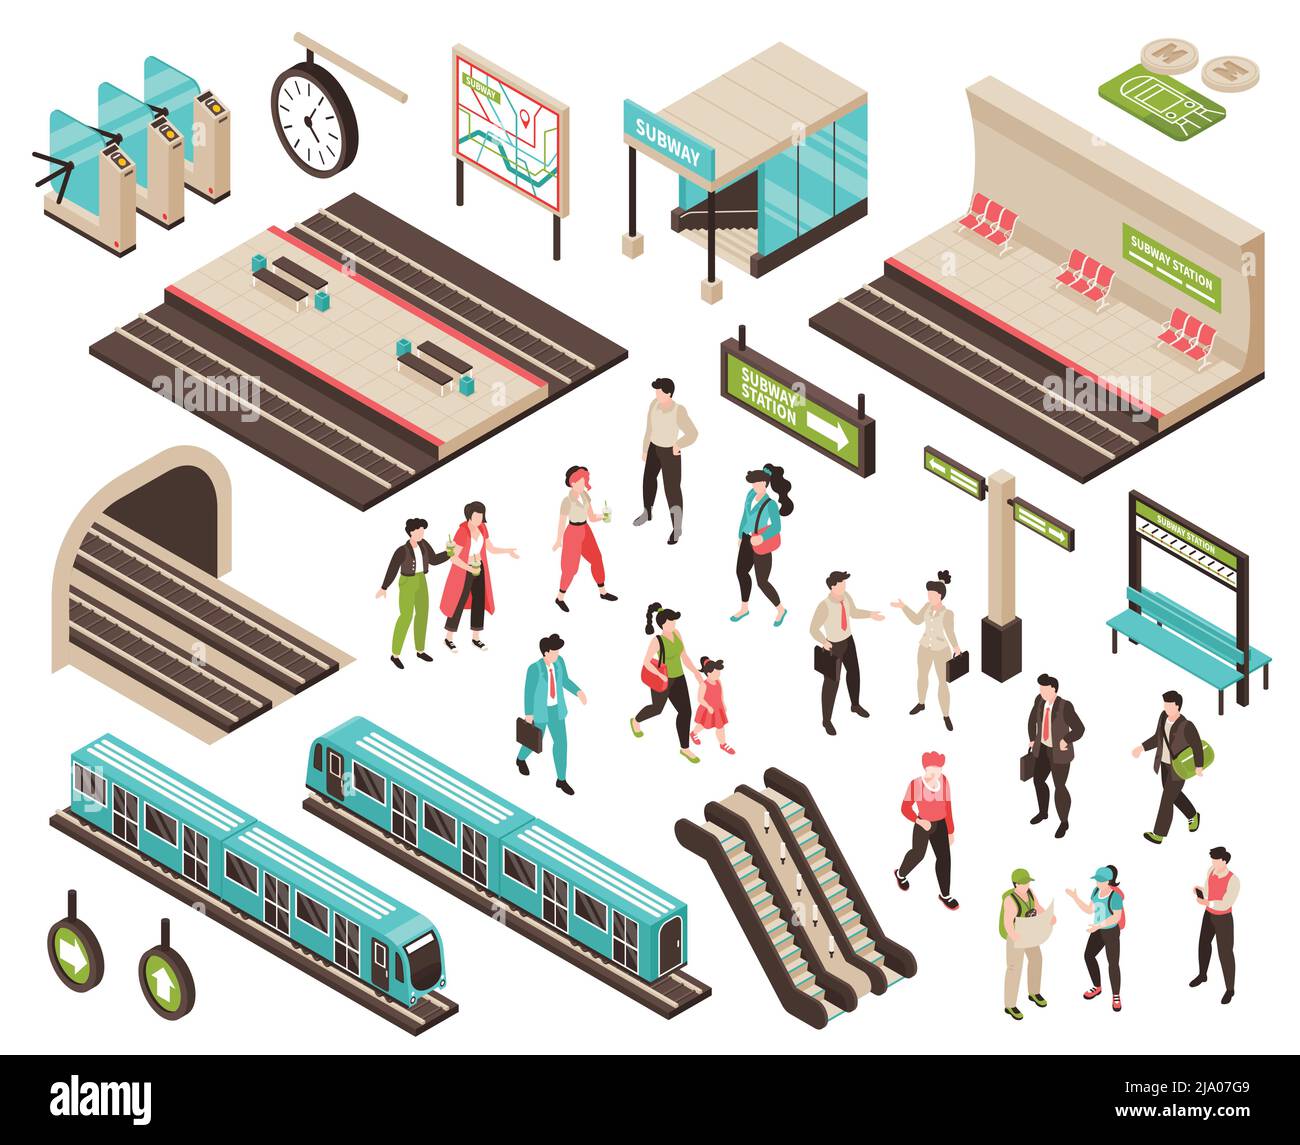 Le persone isometriche della metropolitana sono impostate con caratteri isolati di passeggeri in attesa icone di treni piattaforme e scale mobili illustrazione vettoriale Illustrazione Vettoriale